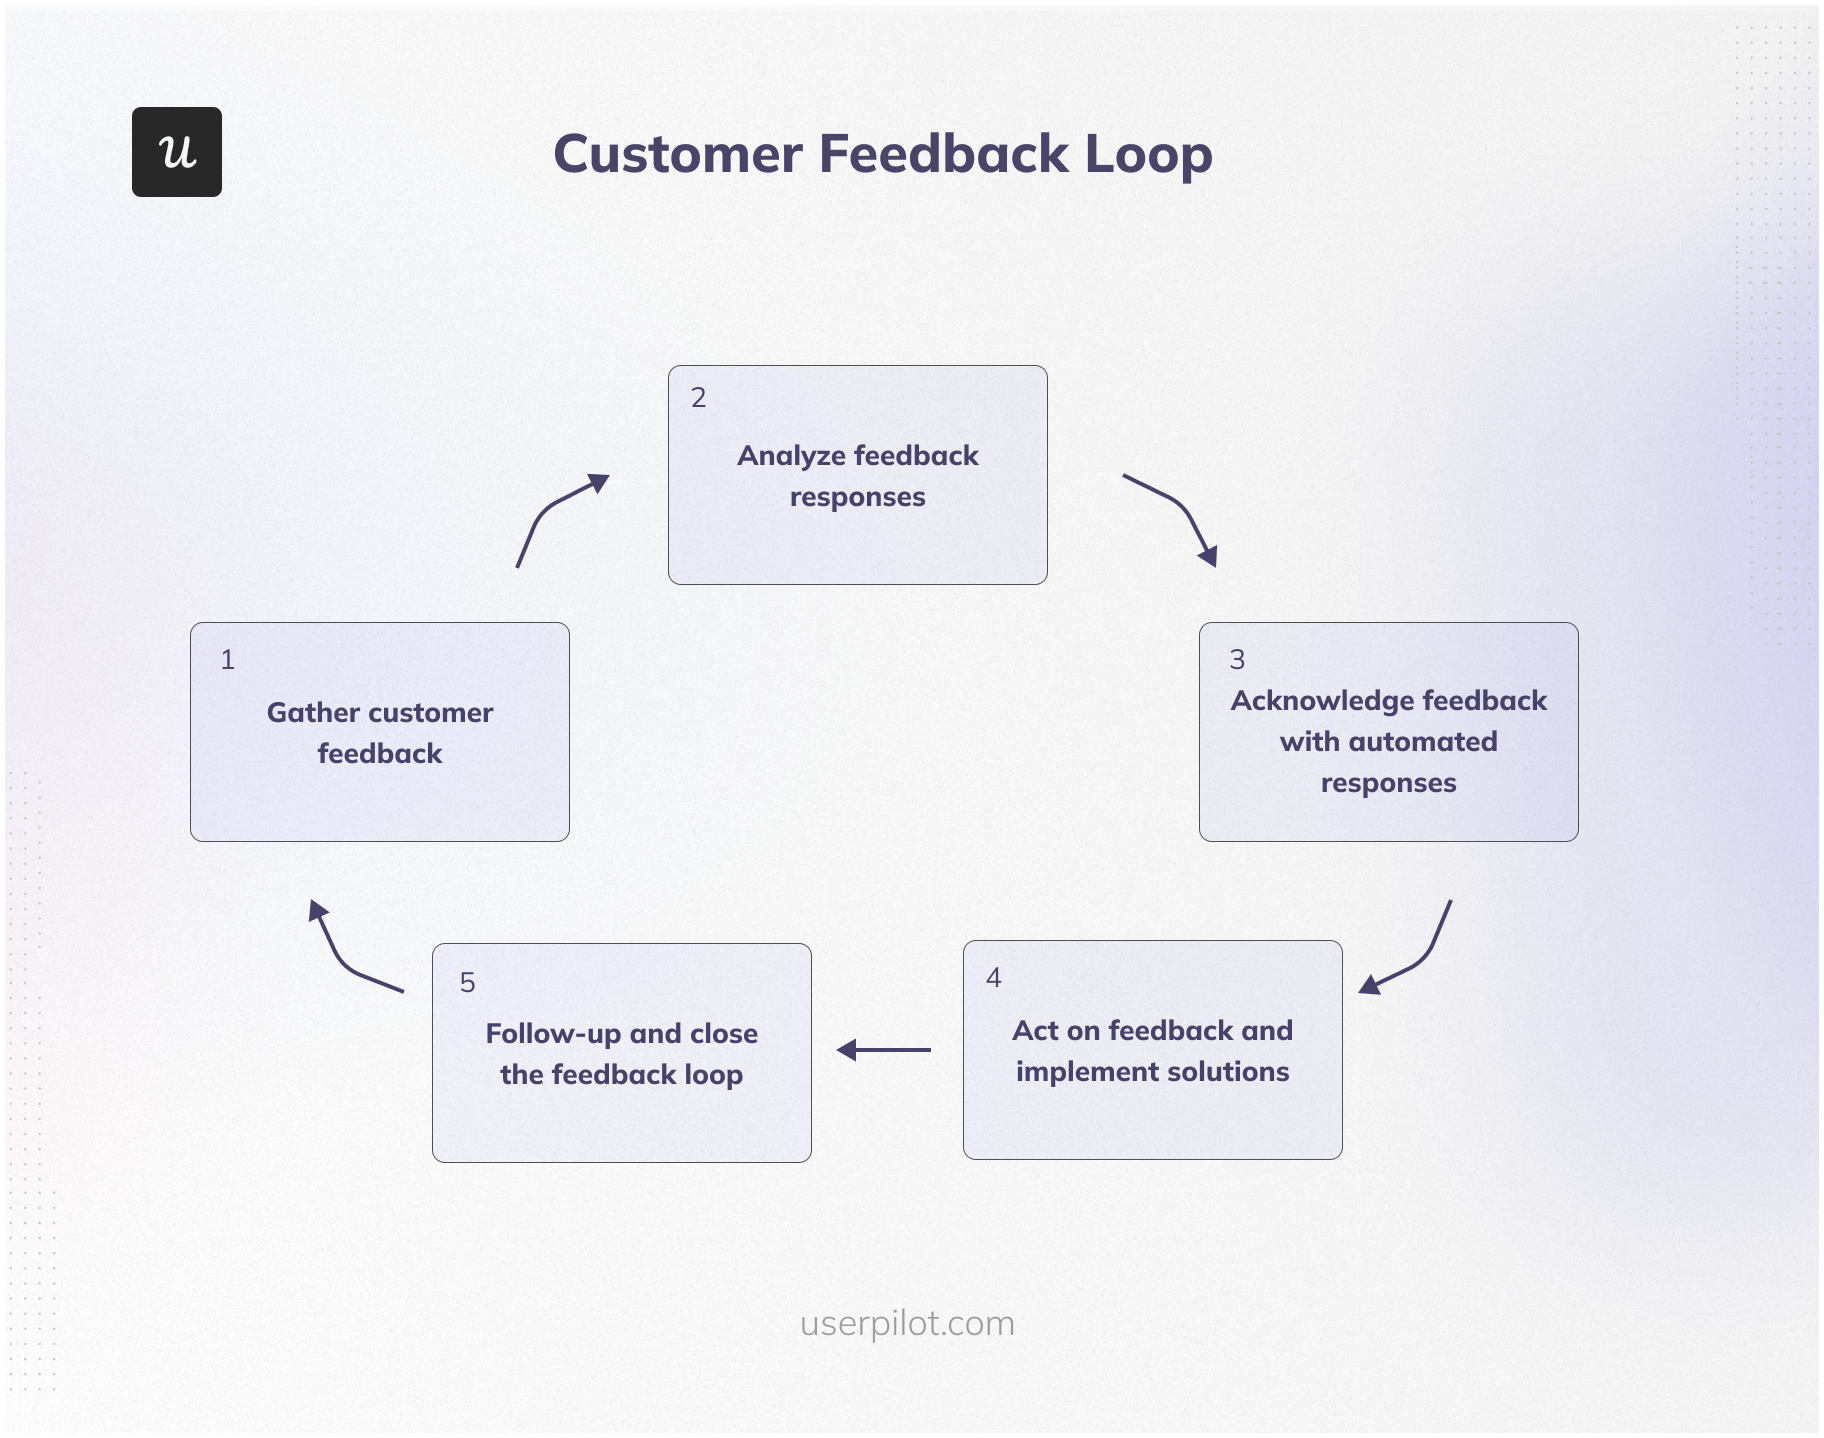 The customer feedback loop.